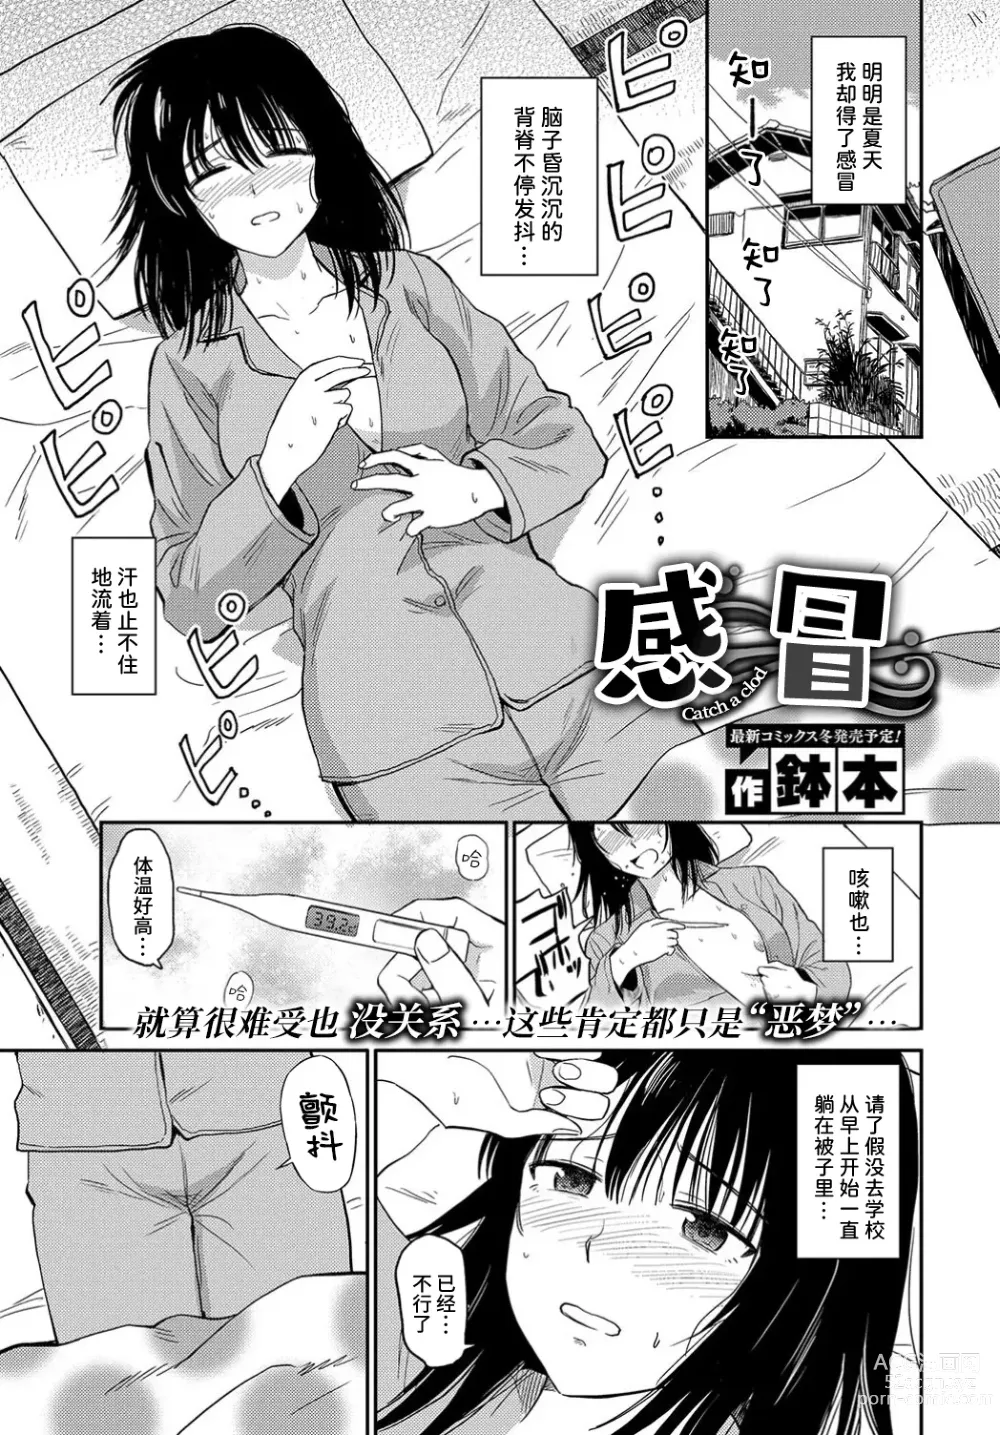 Page 2 of manga 感冒